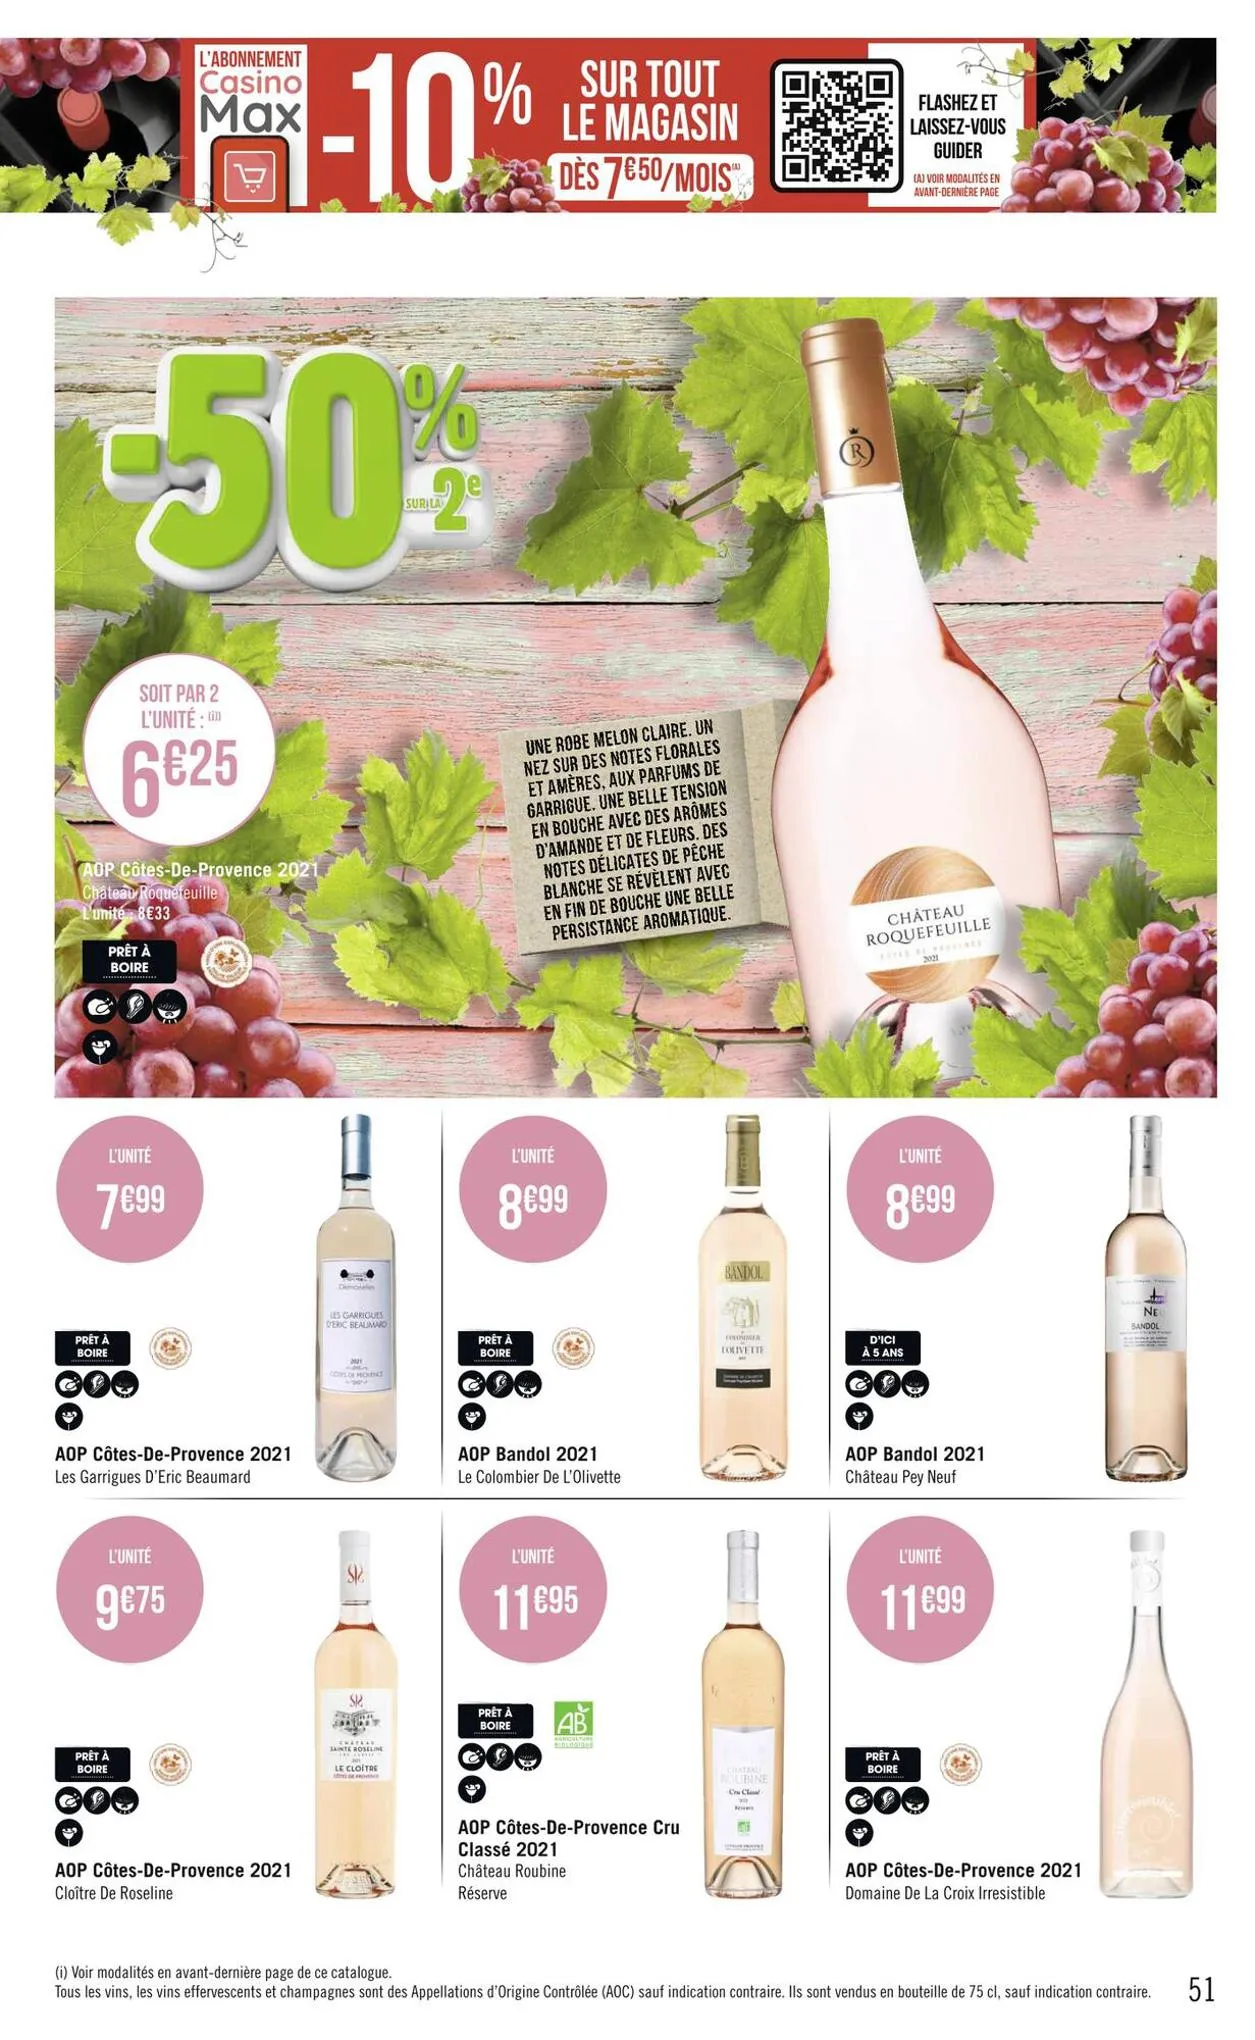 Catalogue Foire aux vins, page 00051